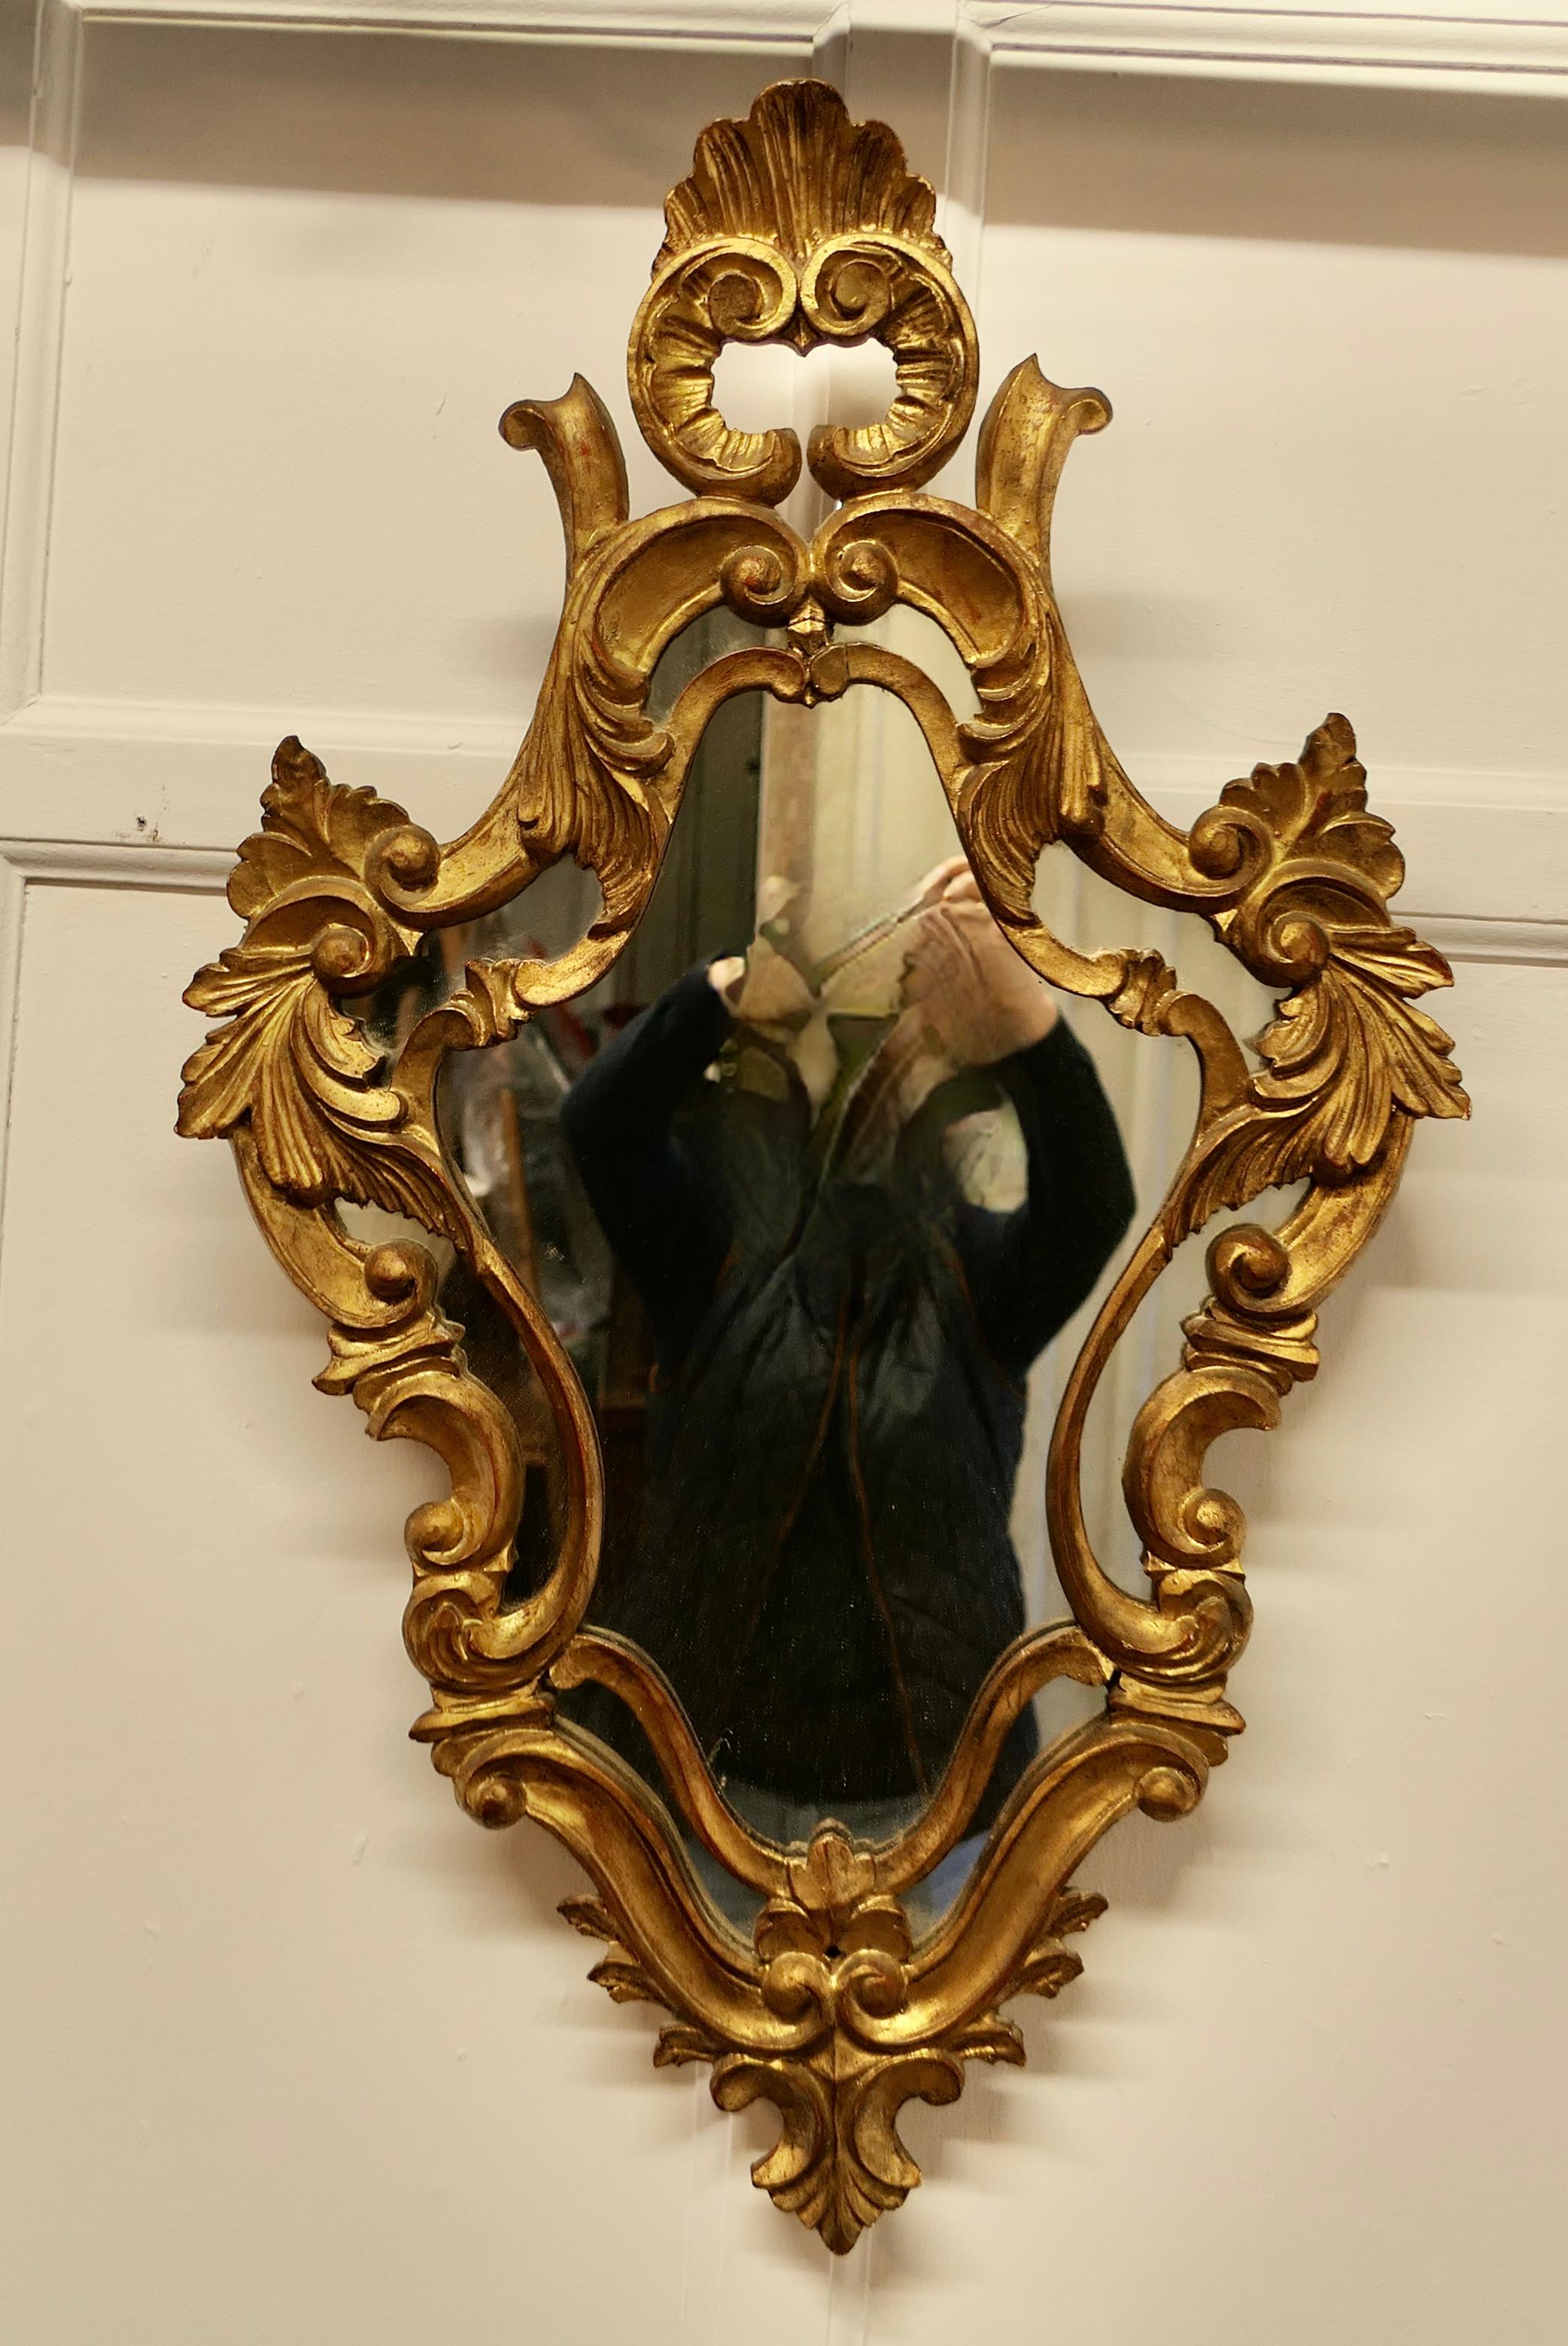 Prächtiger vergoldeter Wandspiegel im Rokoko-Stil

Der Spiegel hat eine aufwendige 4 